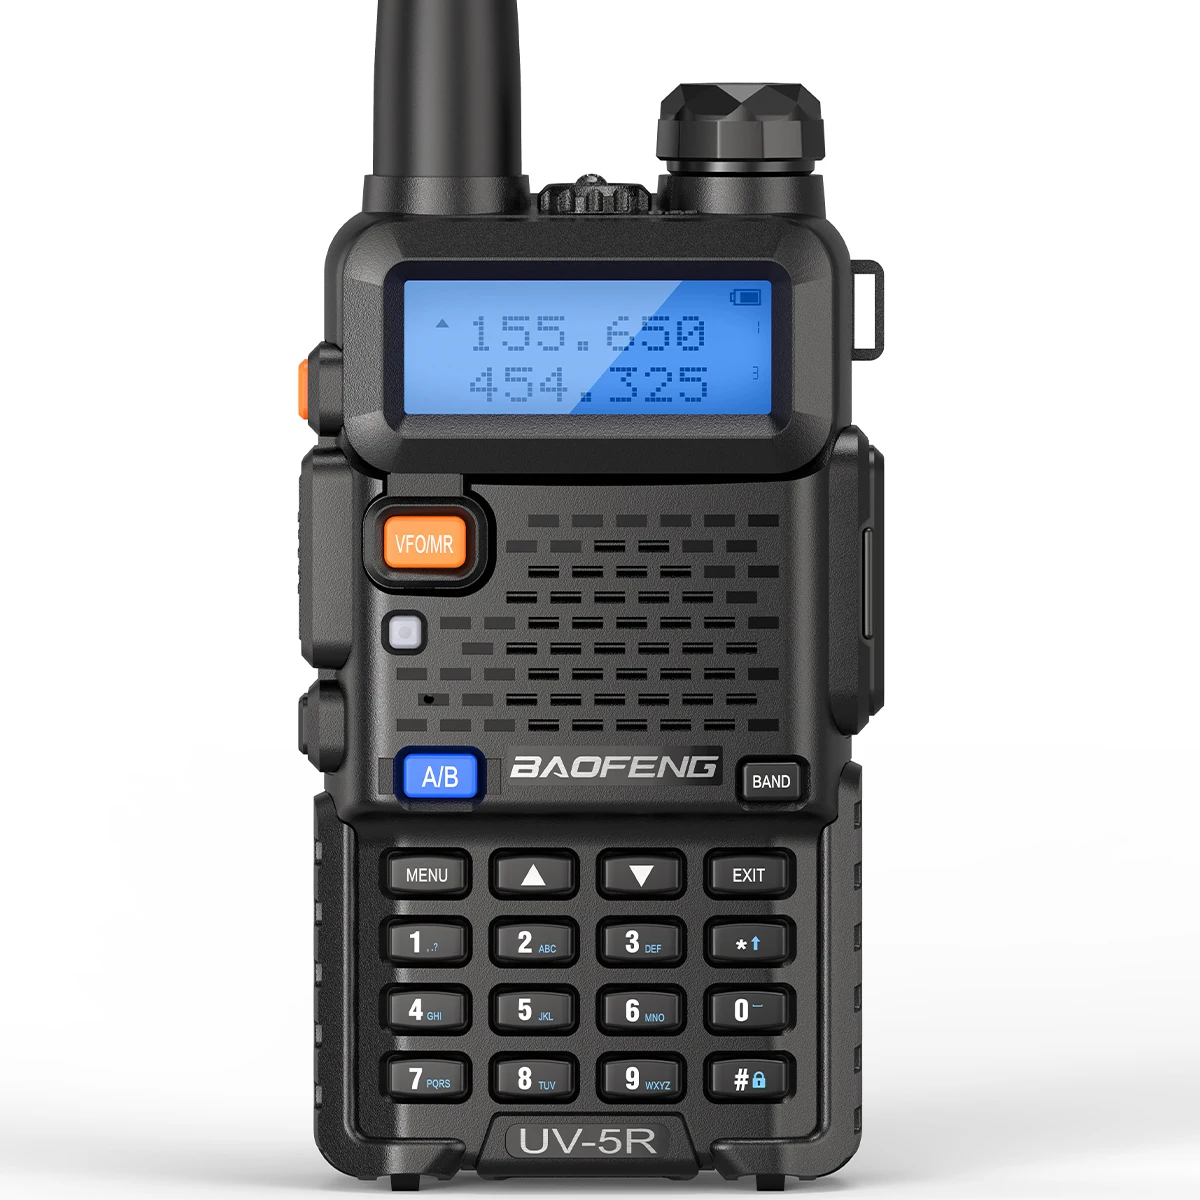 Tanie Baofeng-przenośne Walkie-Talkie UV-5R 5W, krótkofalówka, CB, Radio dwuzakresowy, VHF/UHF, nadajnik sklep